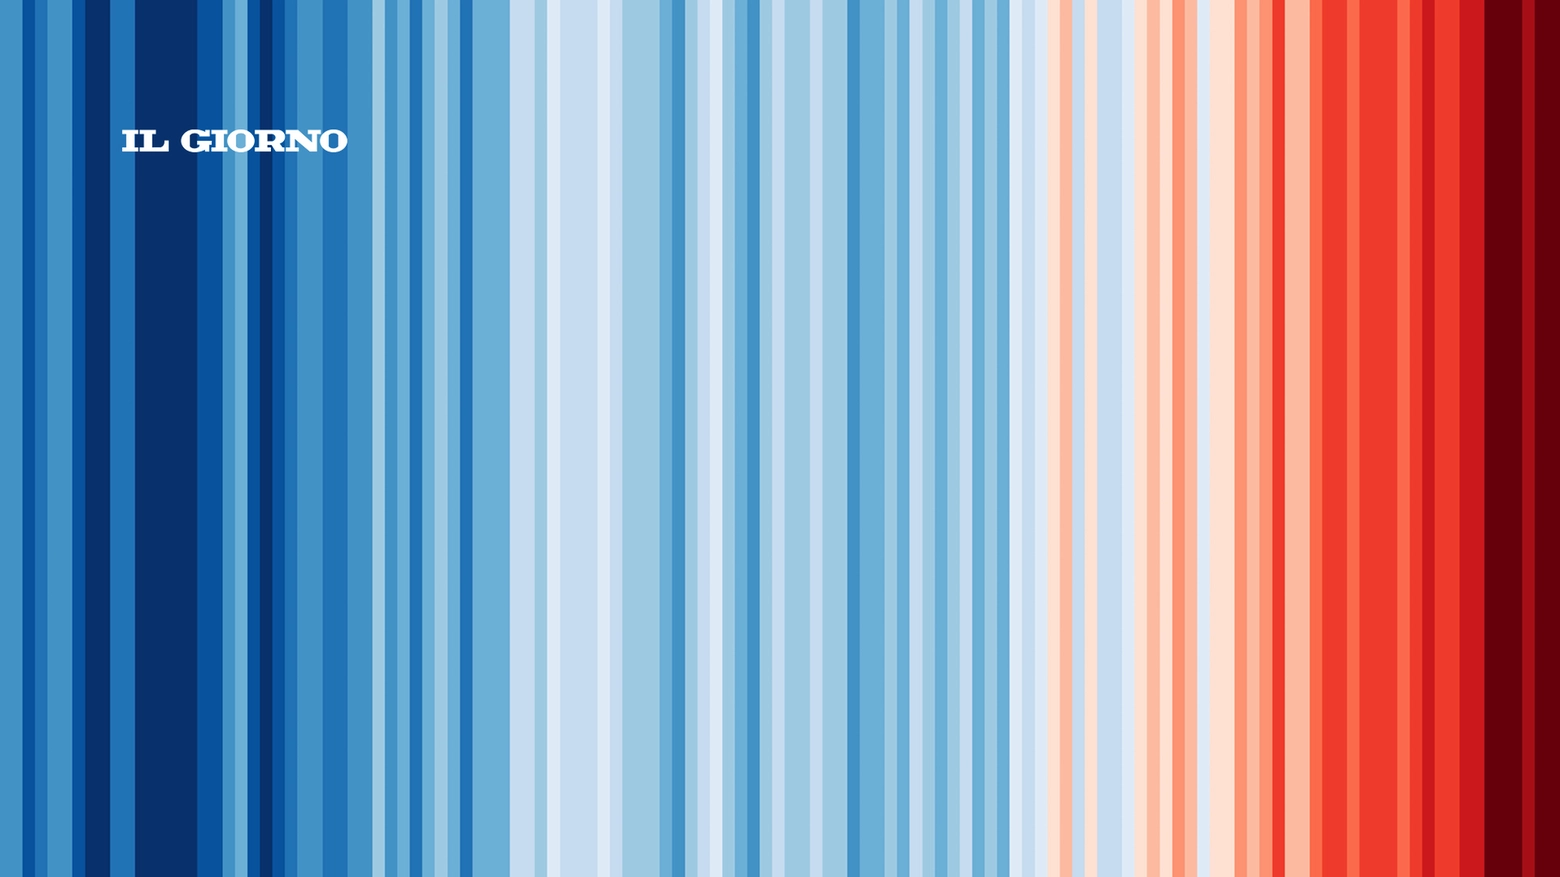 Il grafico di Ed Hawkins mostra l'aumento della temperatura globale negli ultimi 150 anni